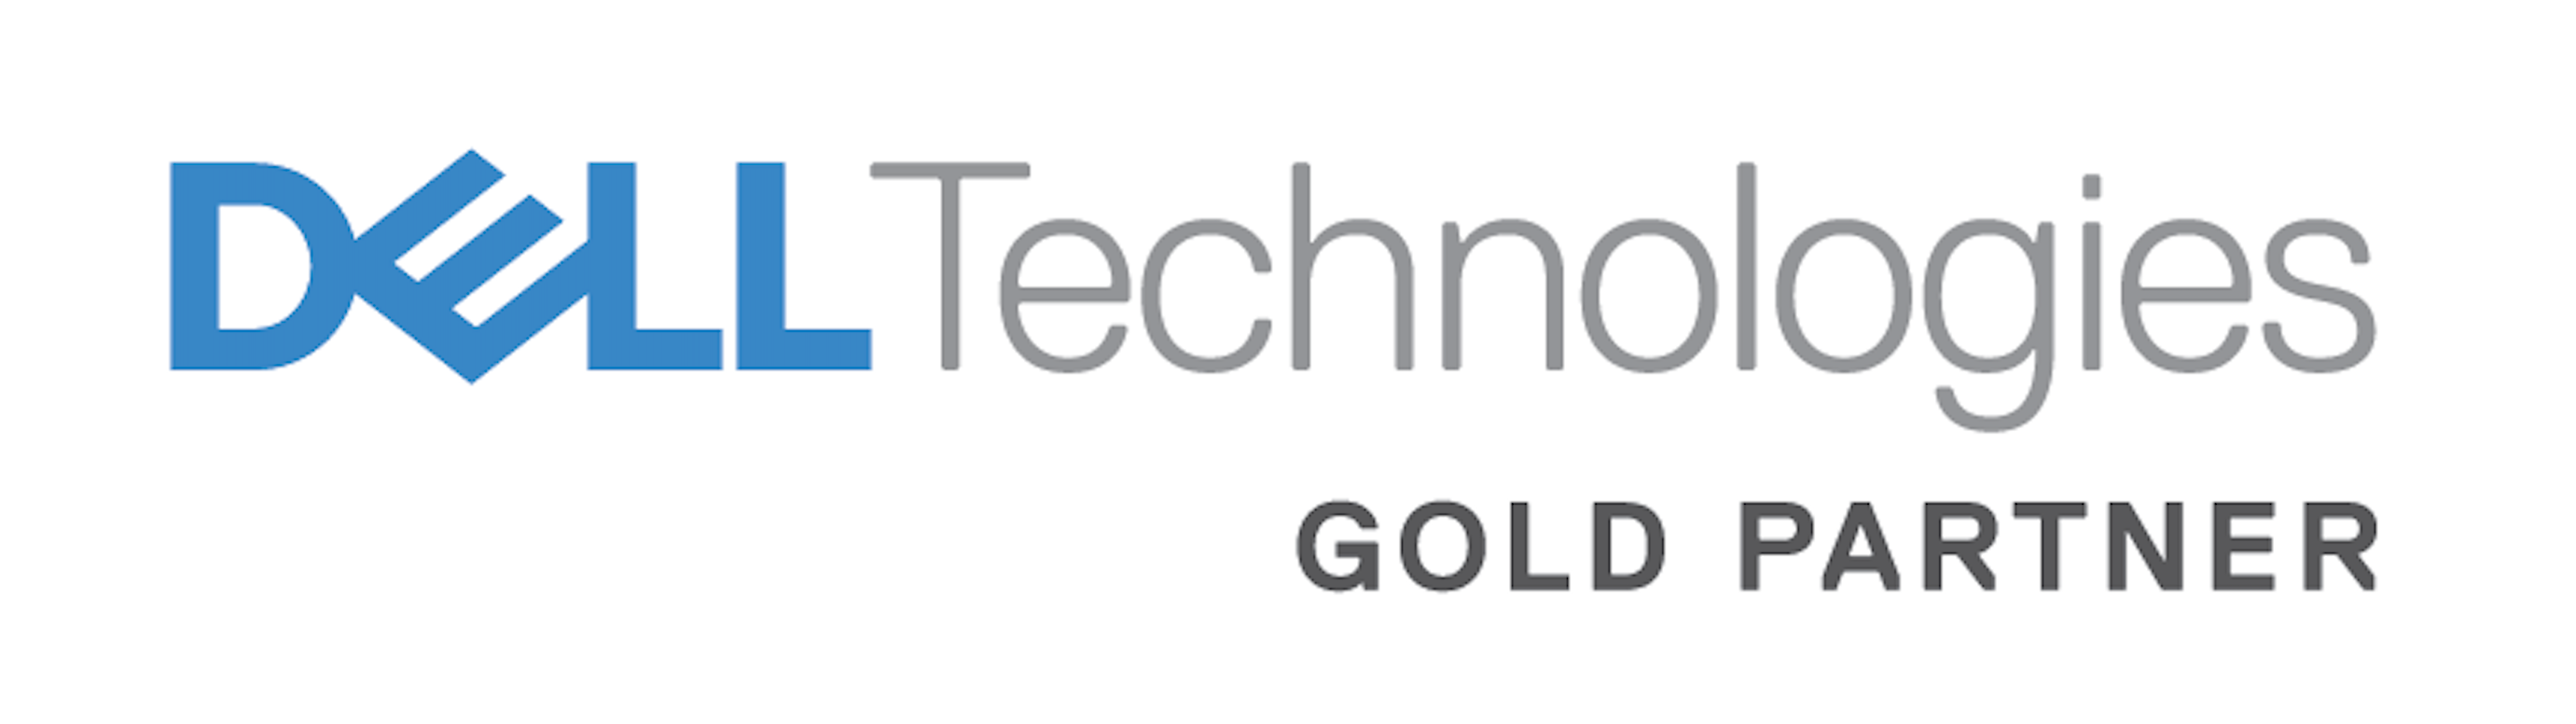 dell-gold-partner-logo.png